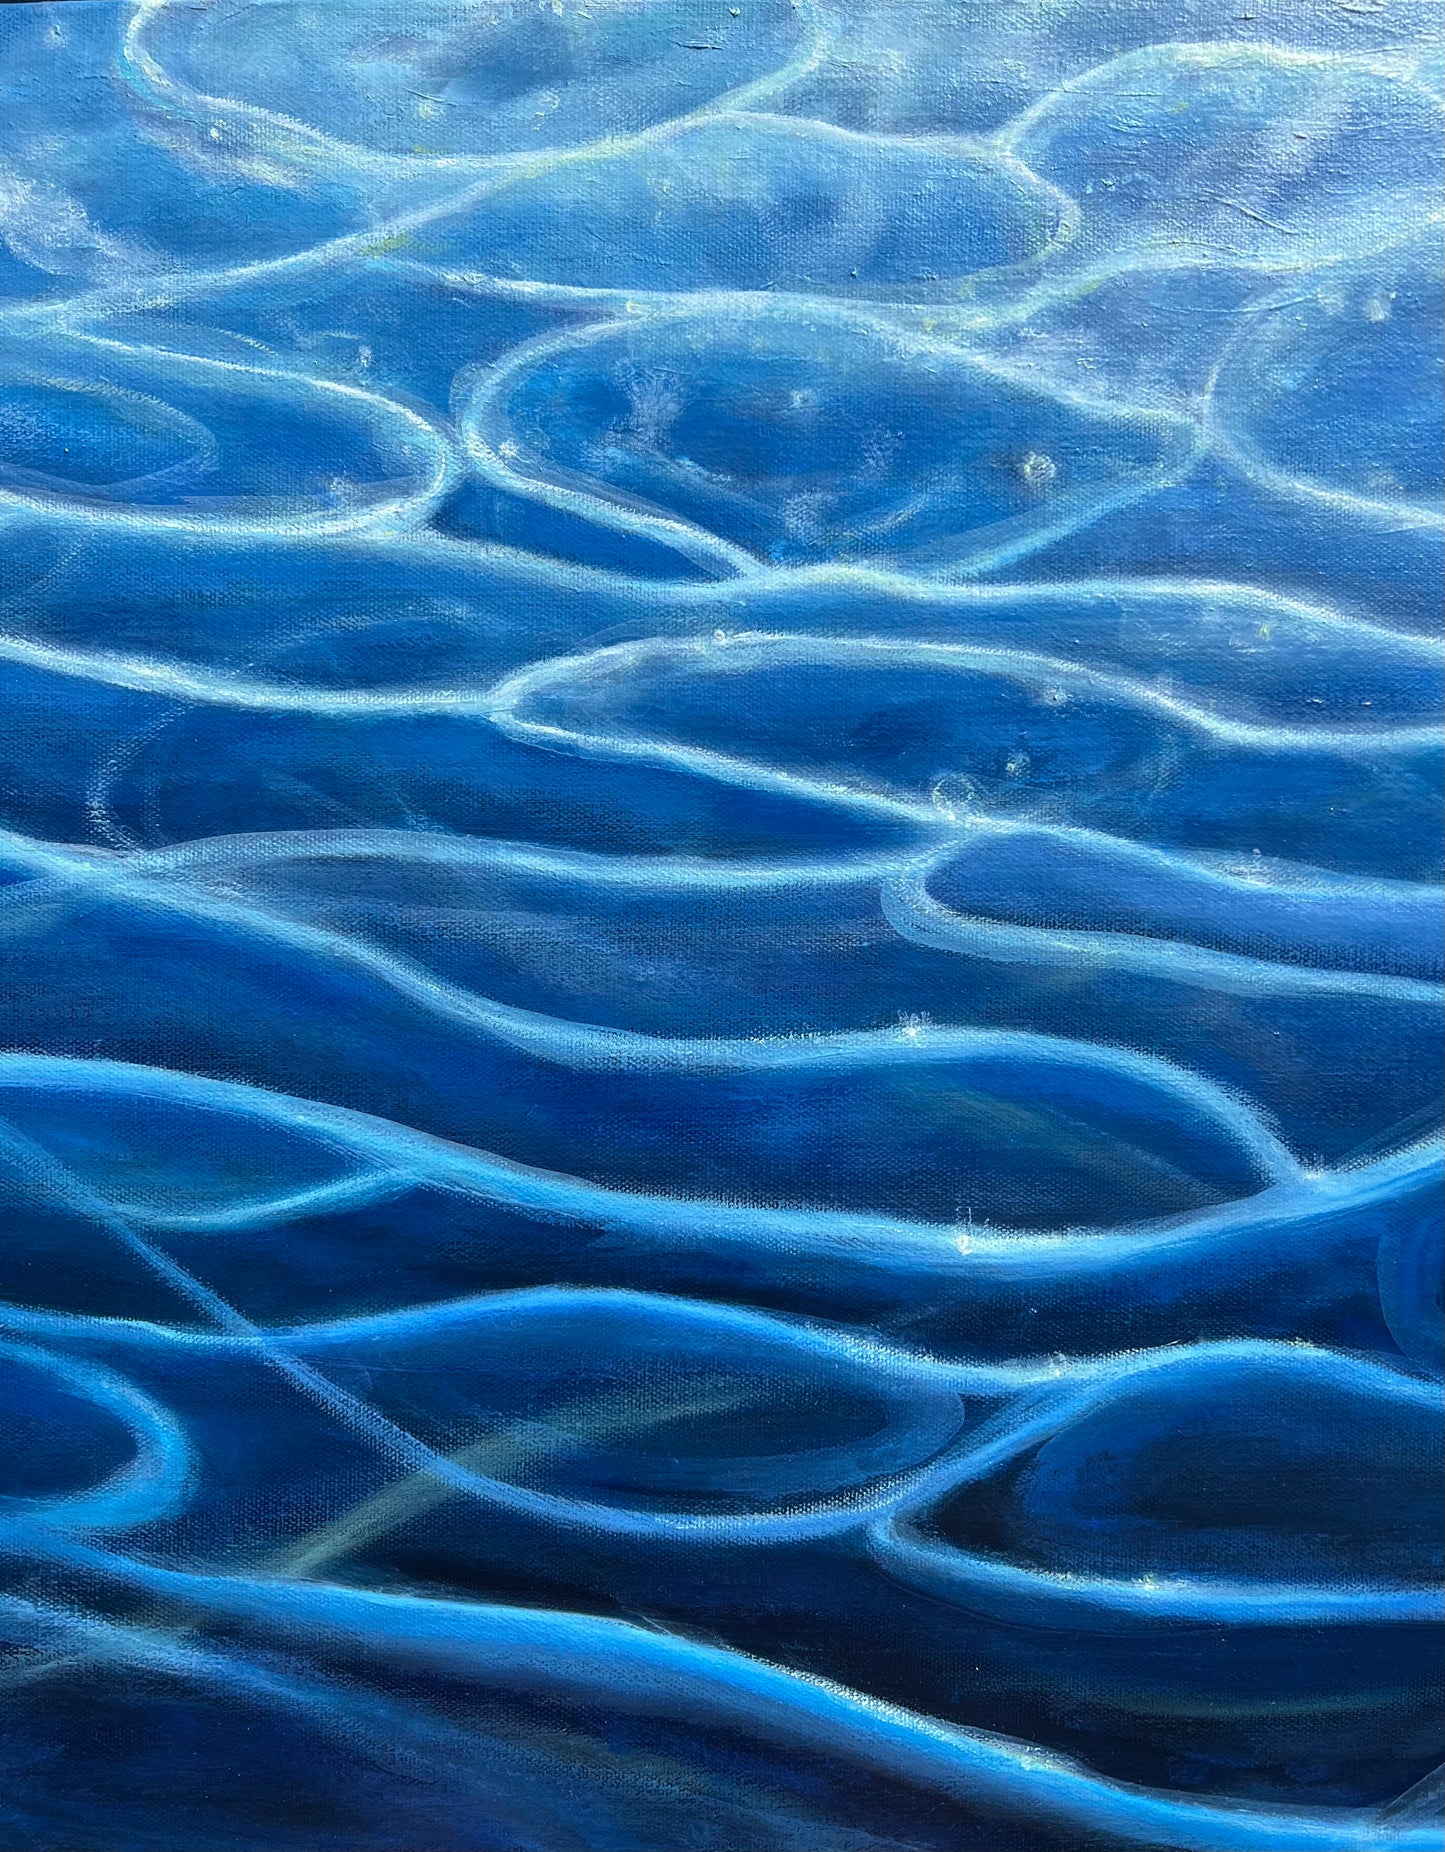 Water- Original Painting by Kirsten Hagen